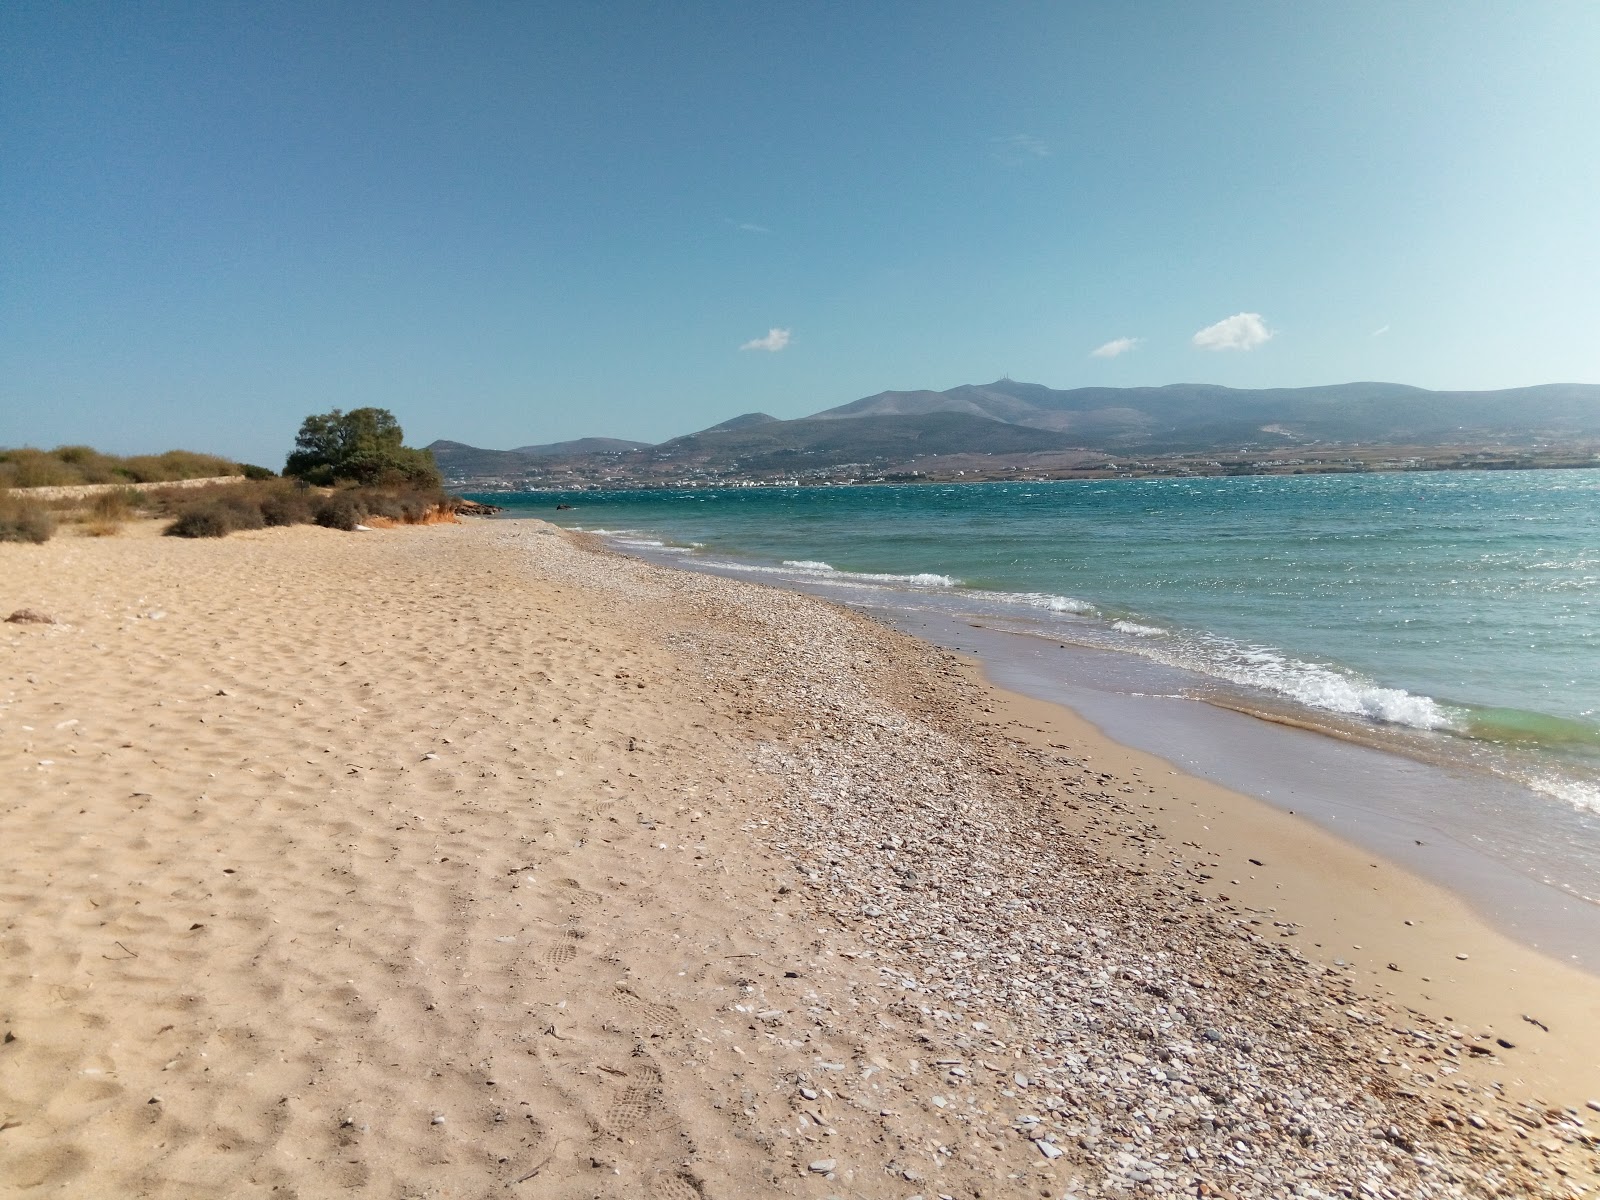 Panagia beach'in fotoğrafı kahverengi kum yüzey ile